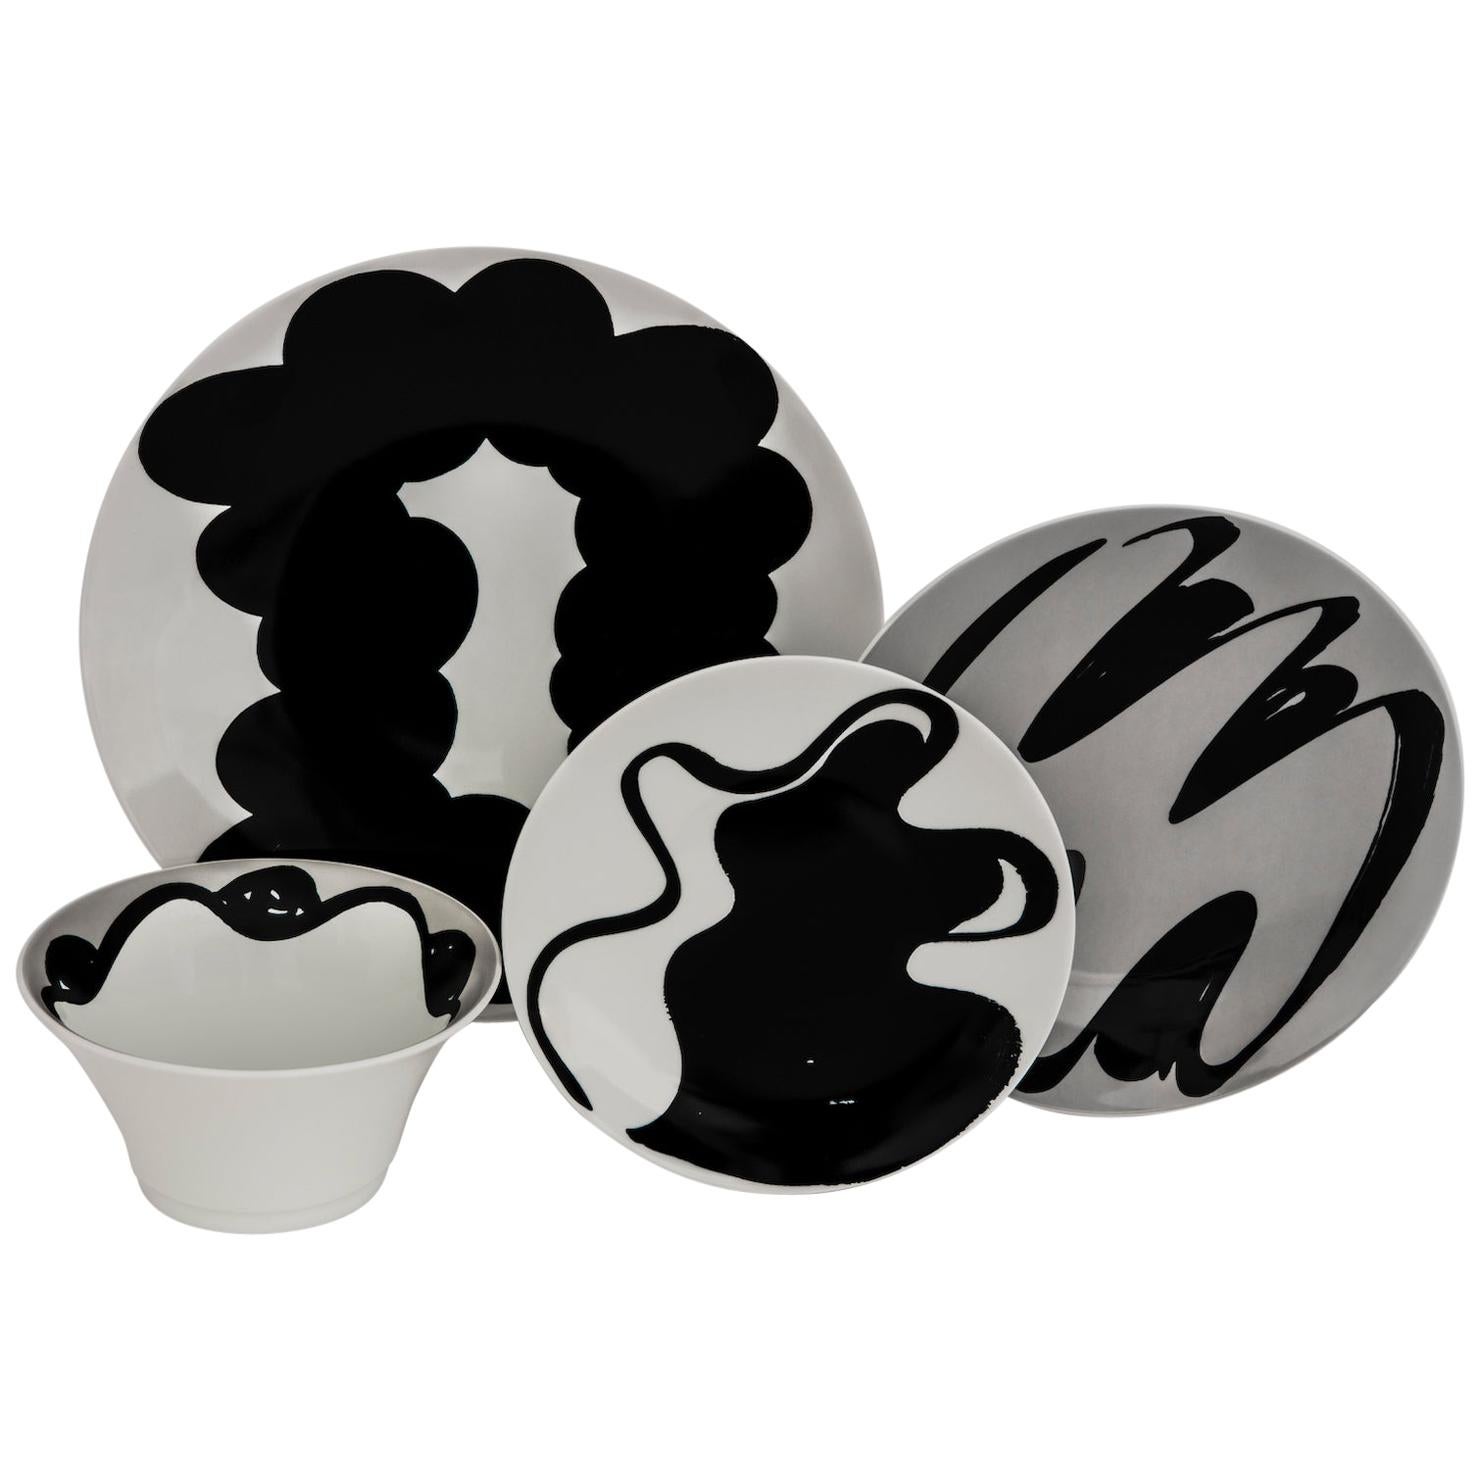 Vajilla de porcelana francesa Limoges gris negra de 4 piezas, platos y cuenco